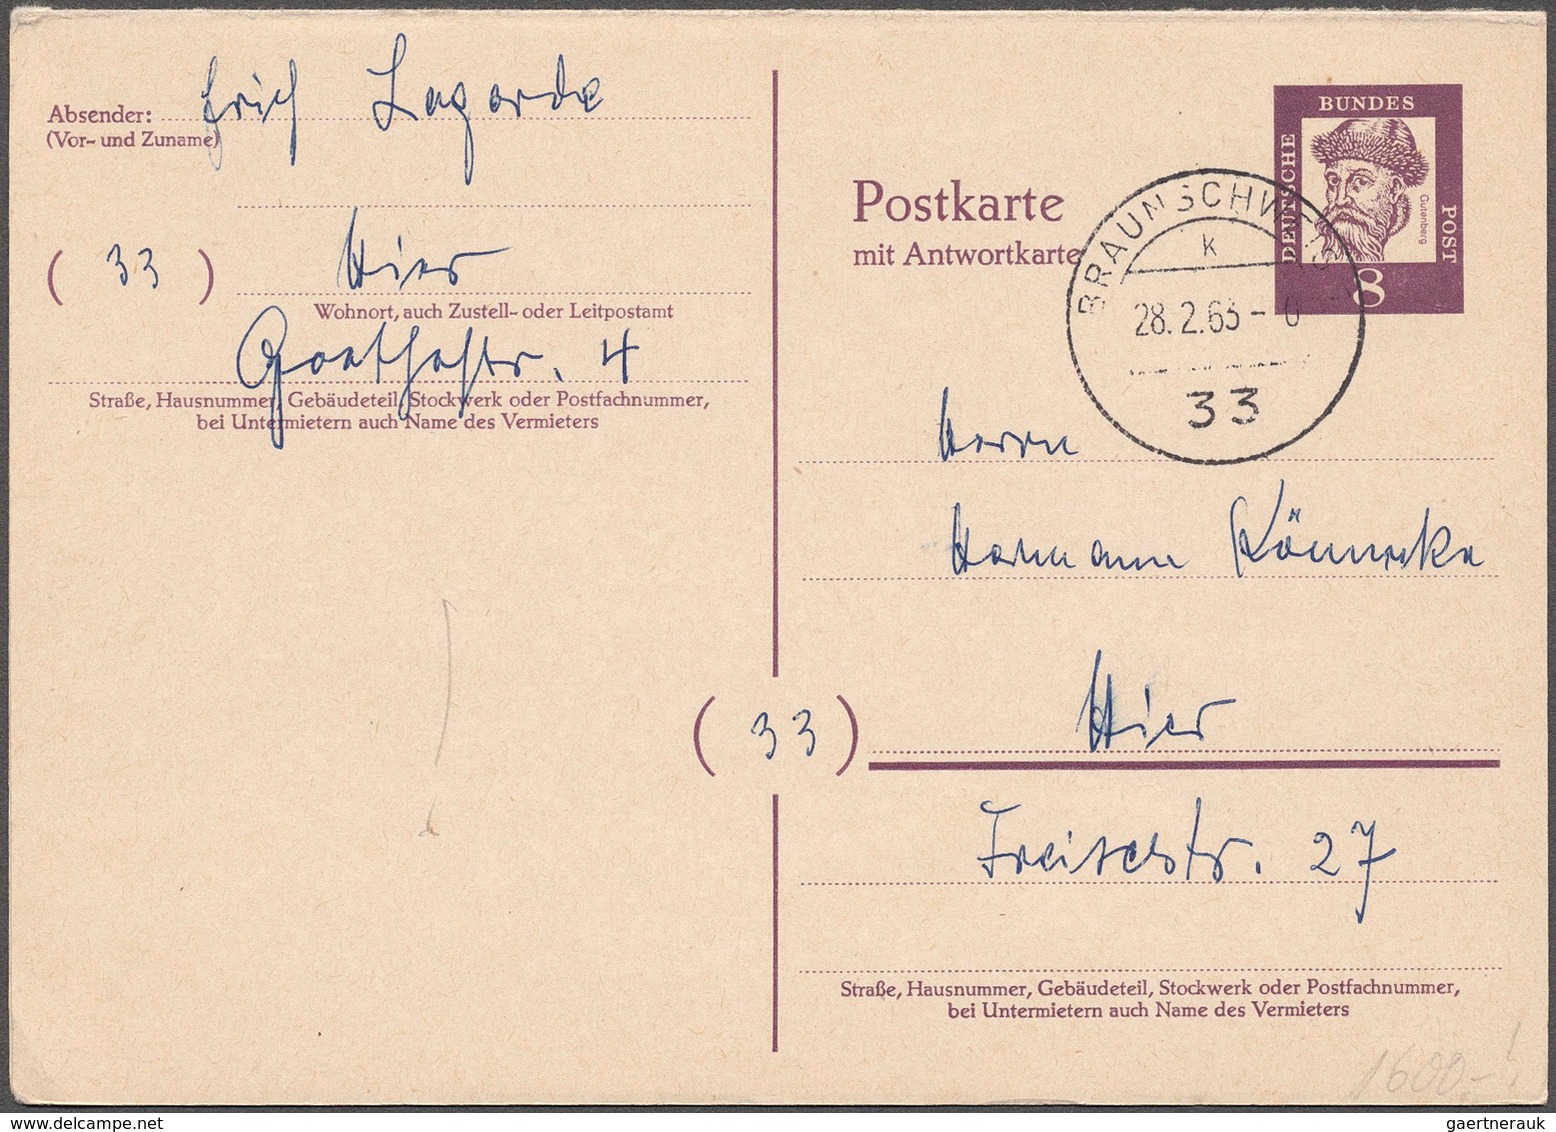 Bundesrepublik Deutschland: 1950/97, interessanter Posten mit 233 Ganzsachen, darunter Spitzenstücke